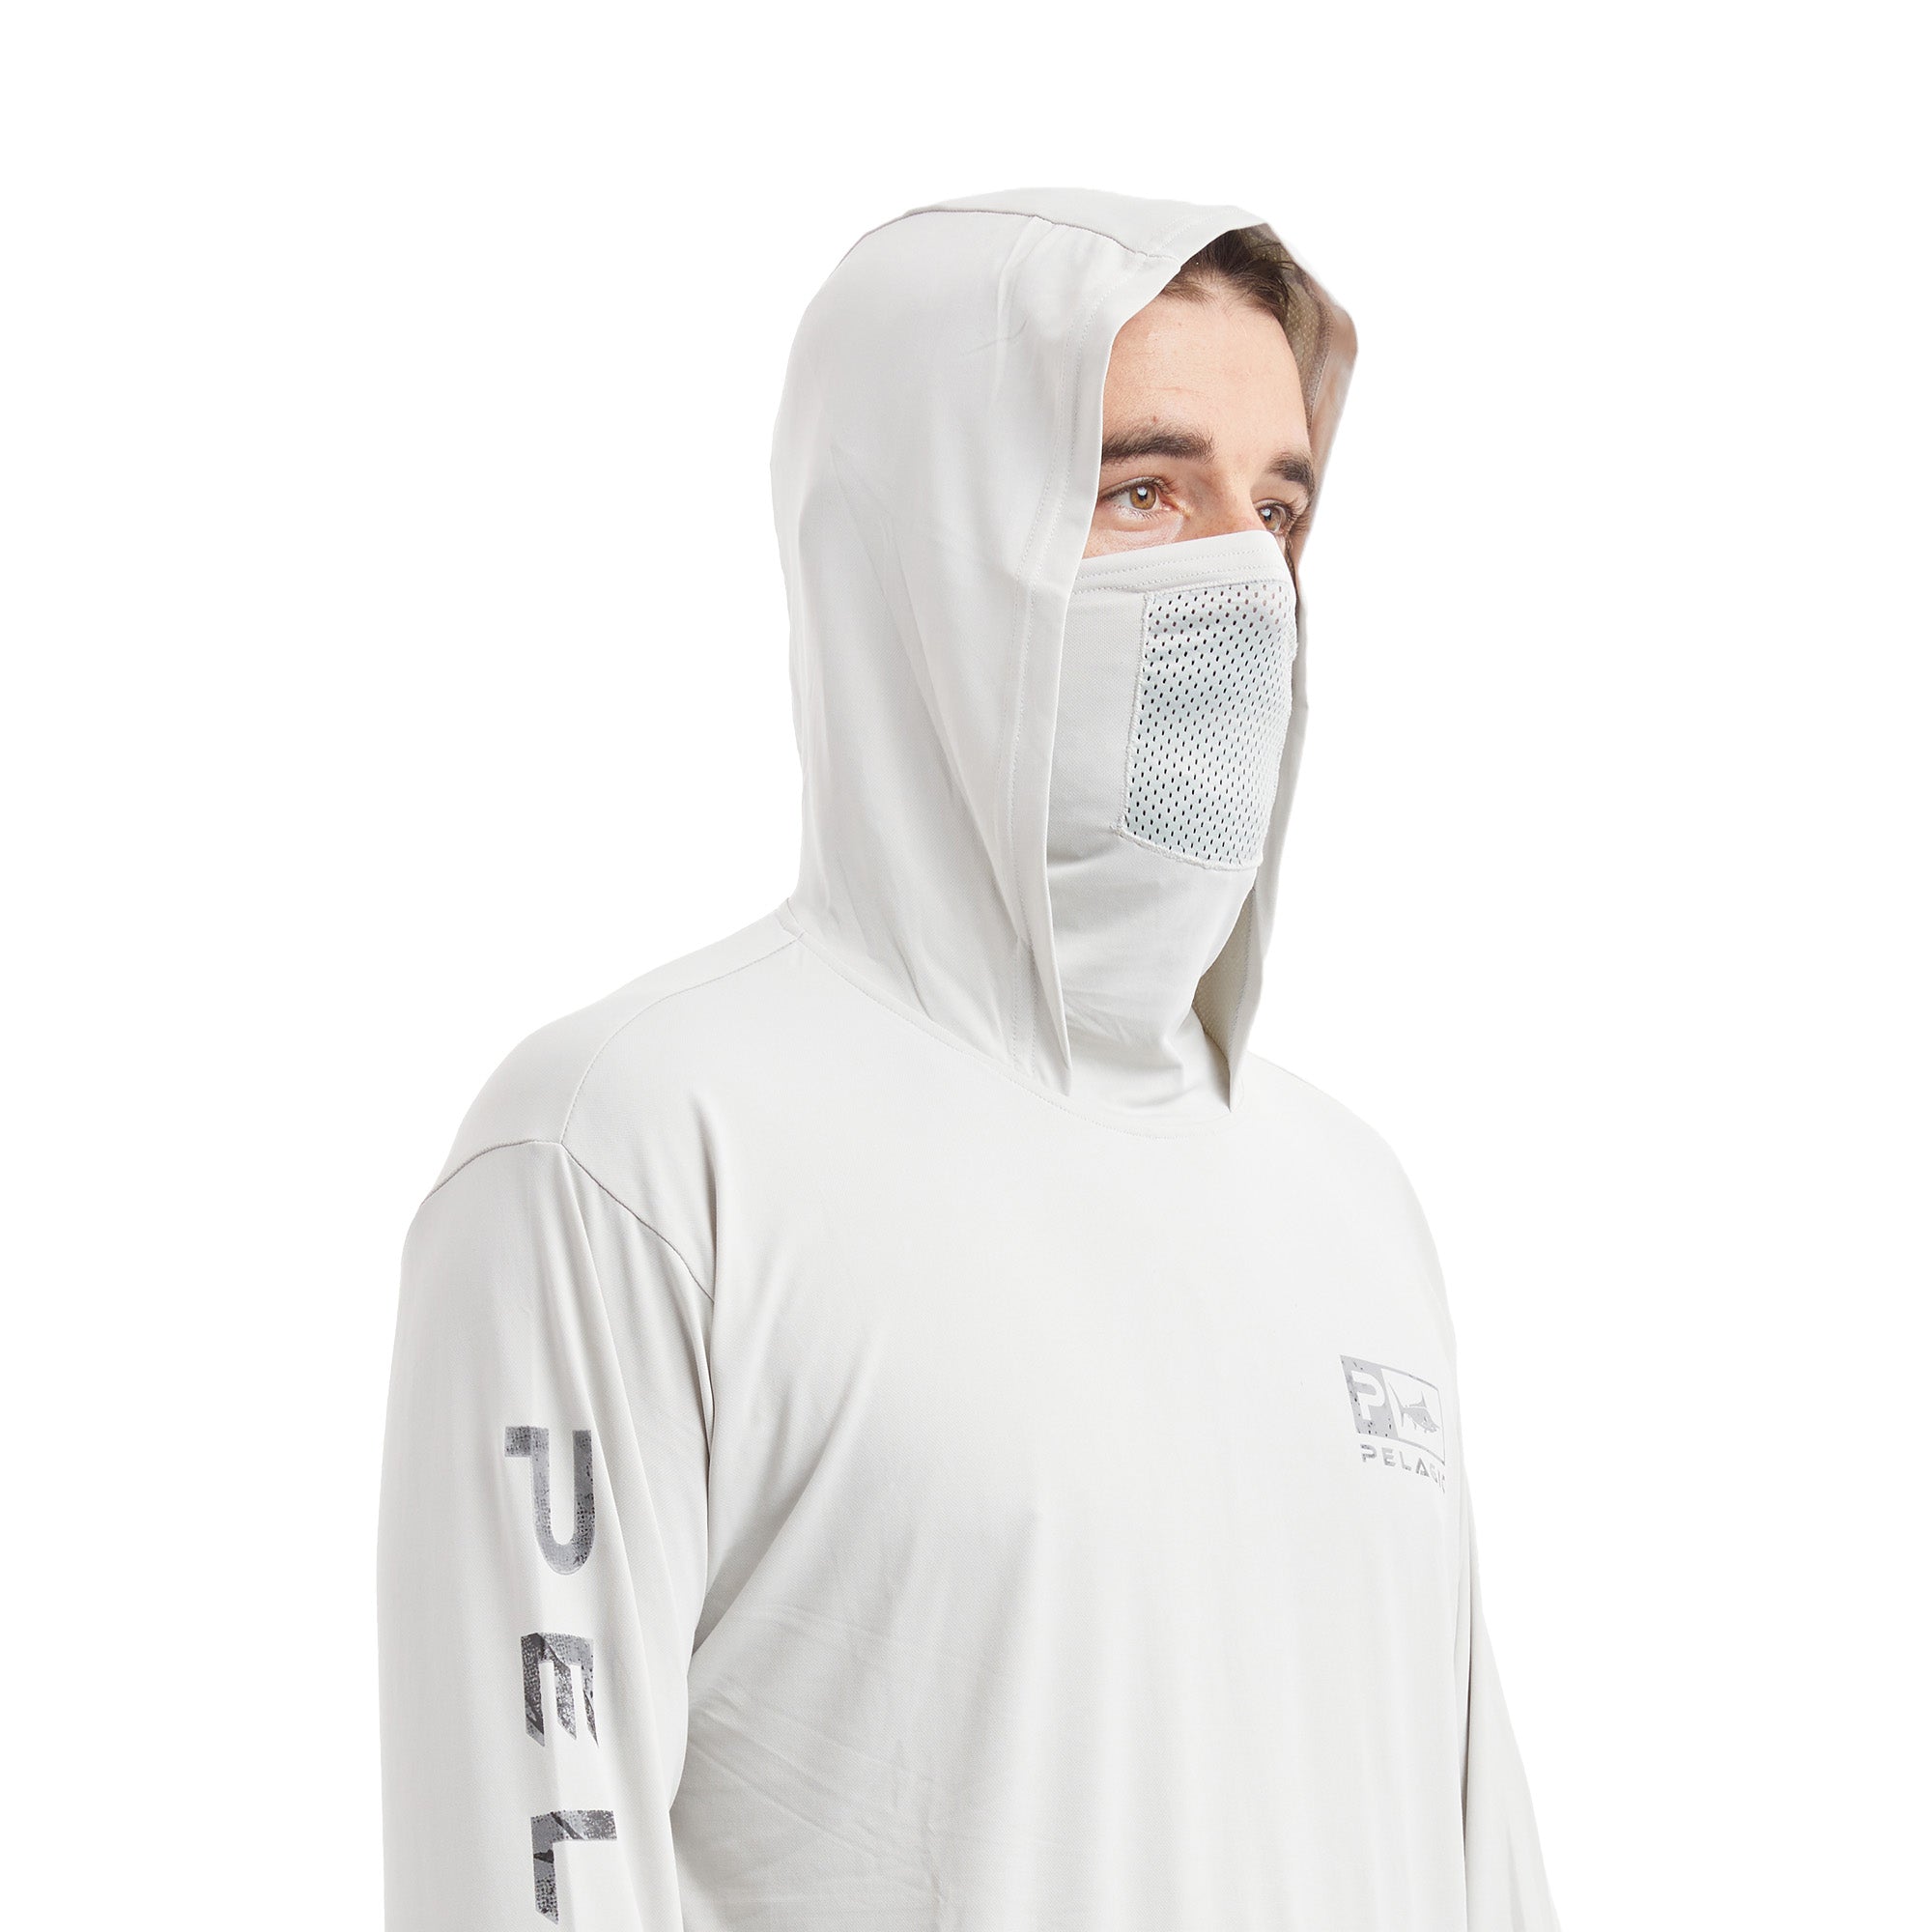 Pelagic Defcon Icon Hooded Fishing Shirt Light Grey / M